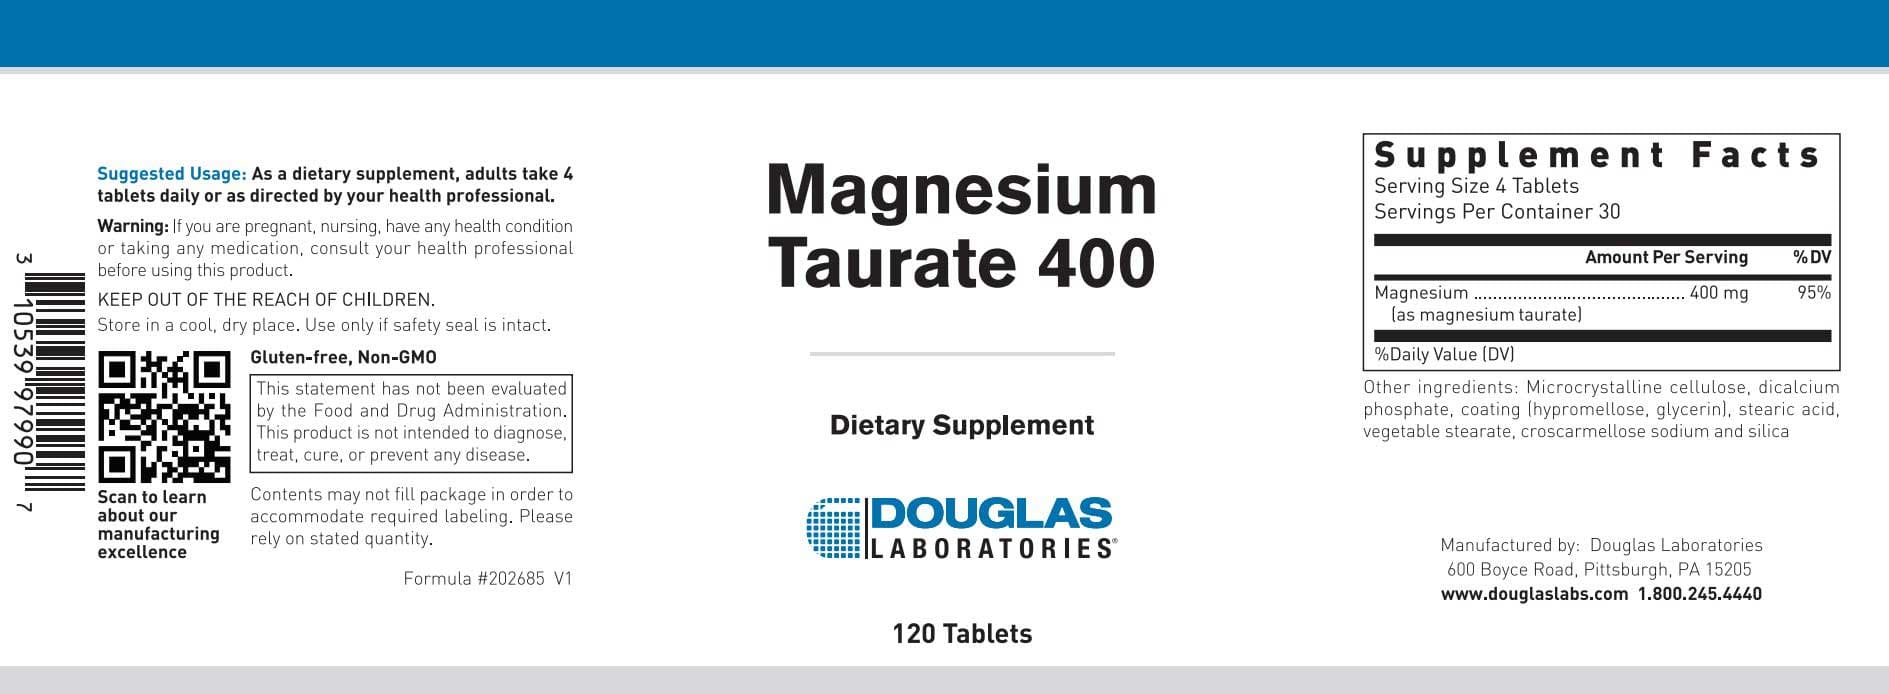 Douglas Laboratories Magnesium Taurate 400 Label